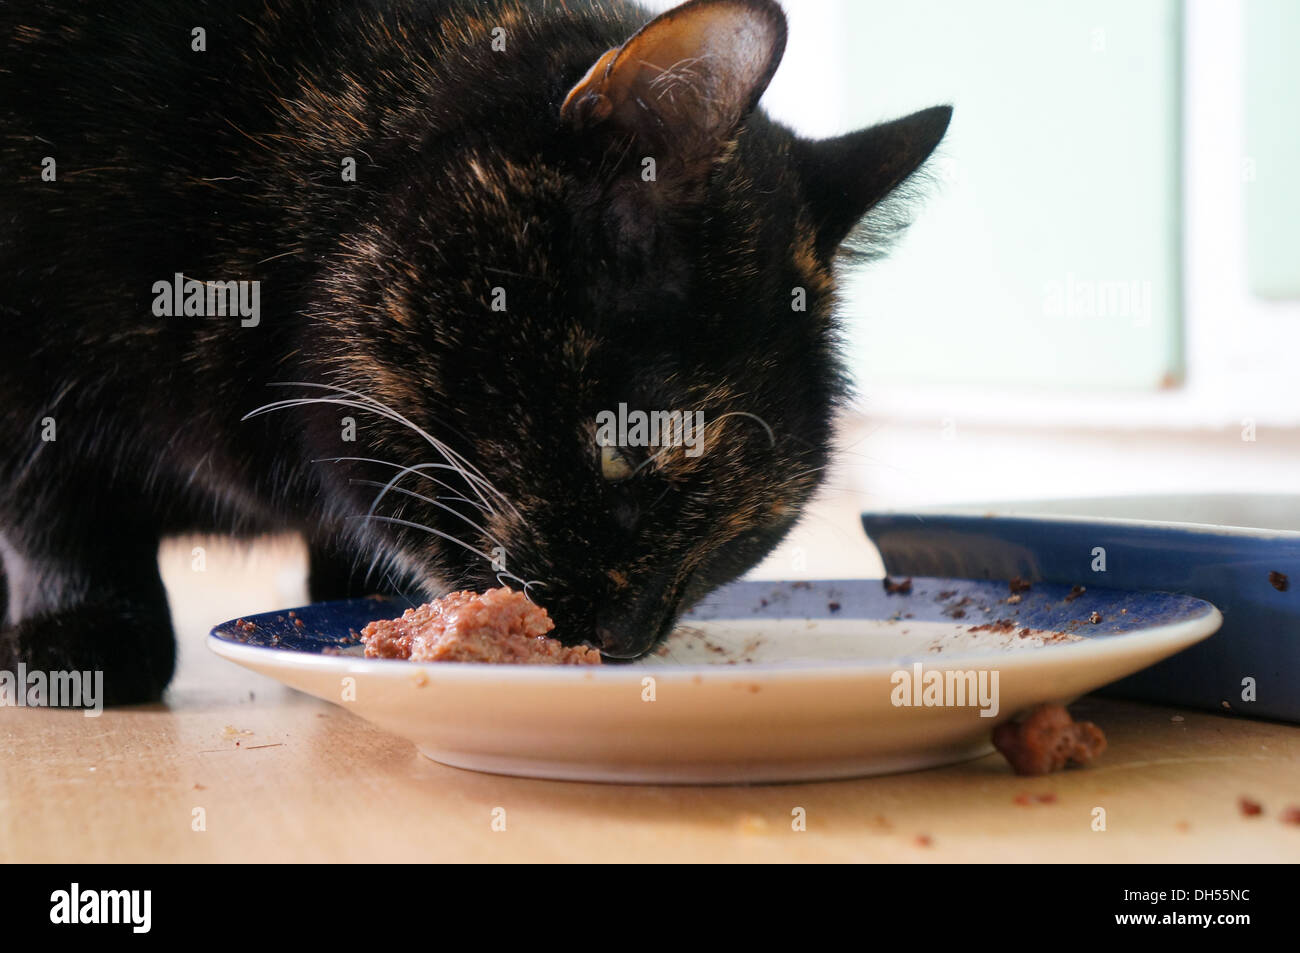 Black Cat de manger des aliments à partir d'une plate Banque D'Images